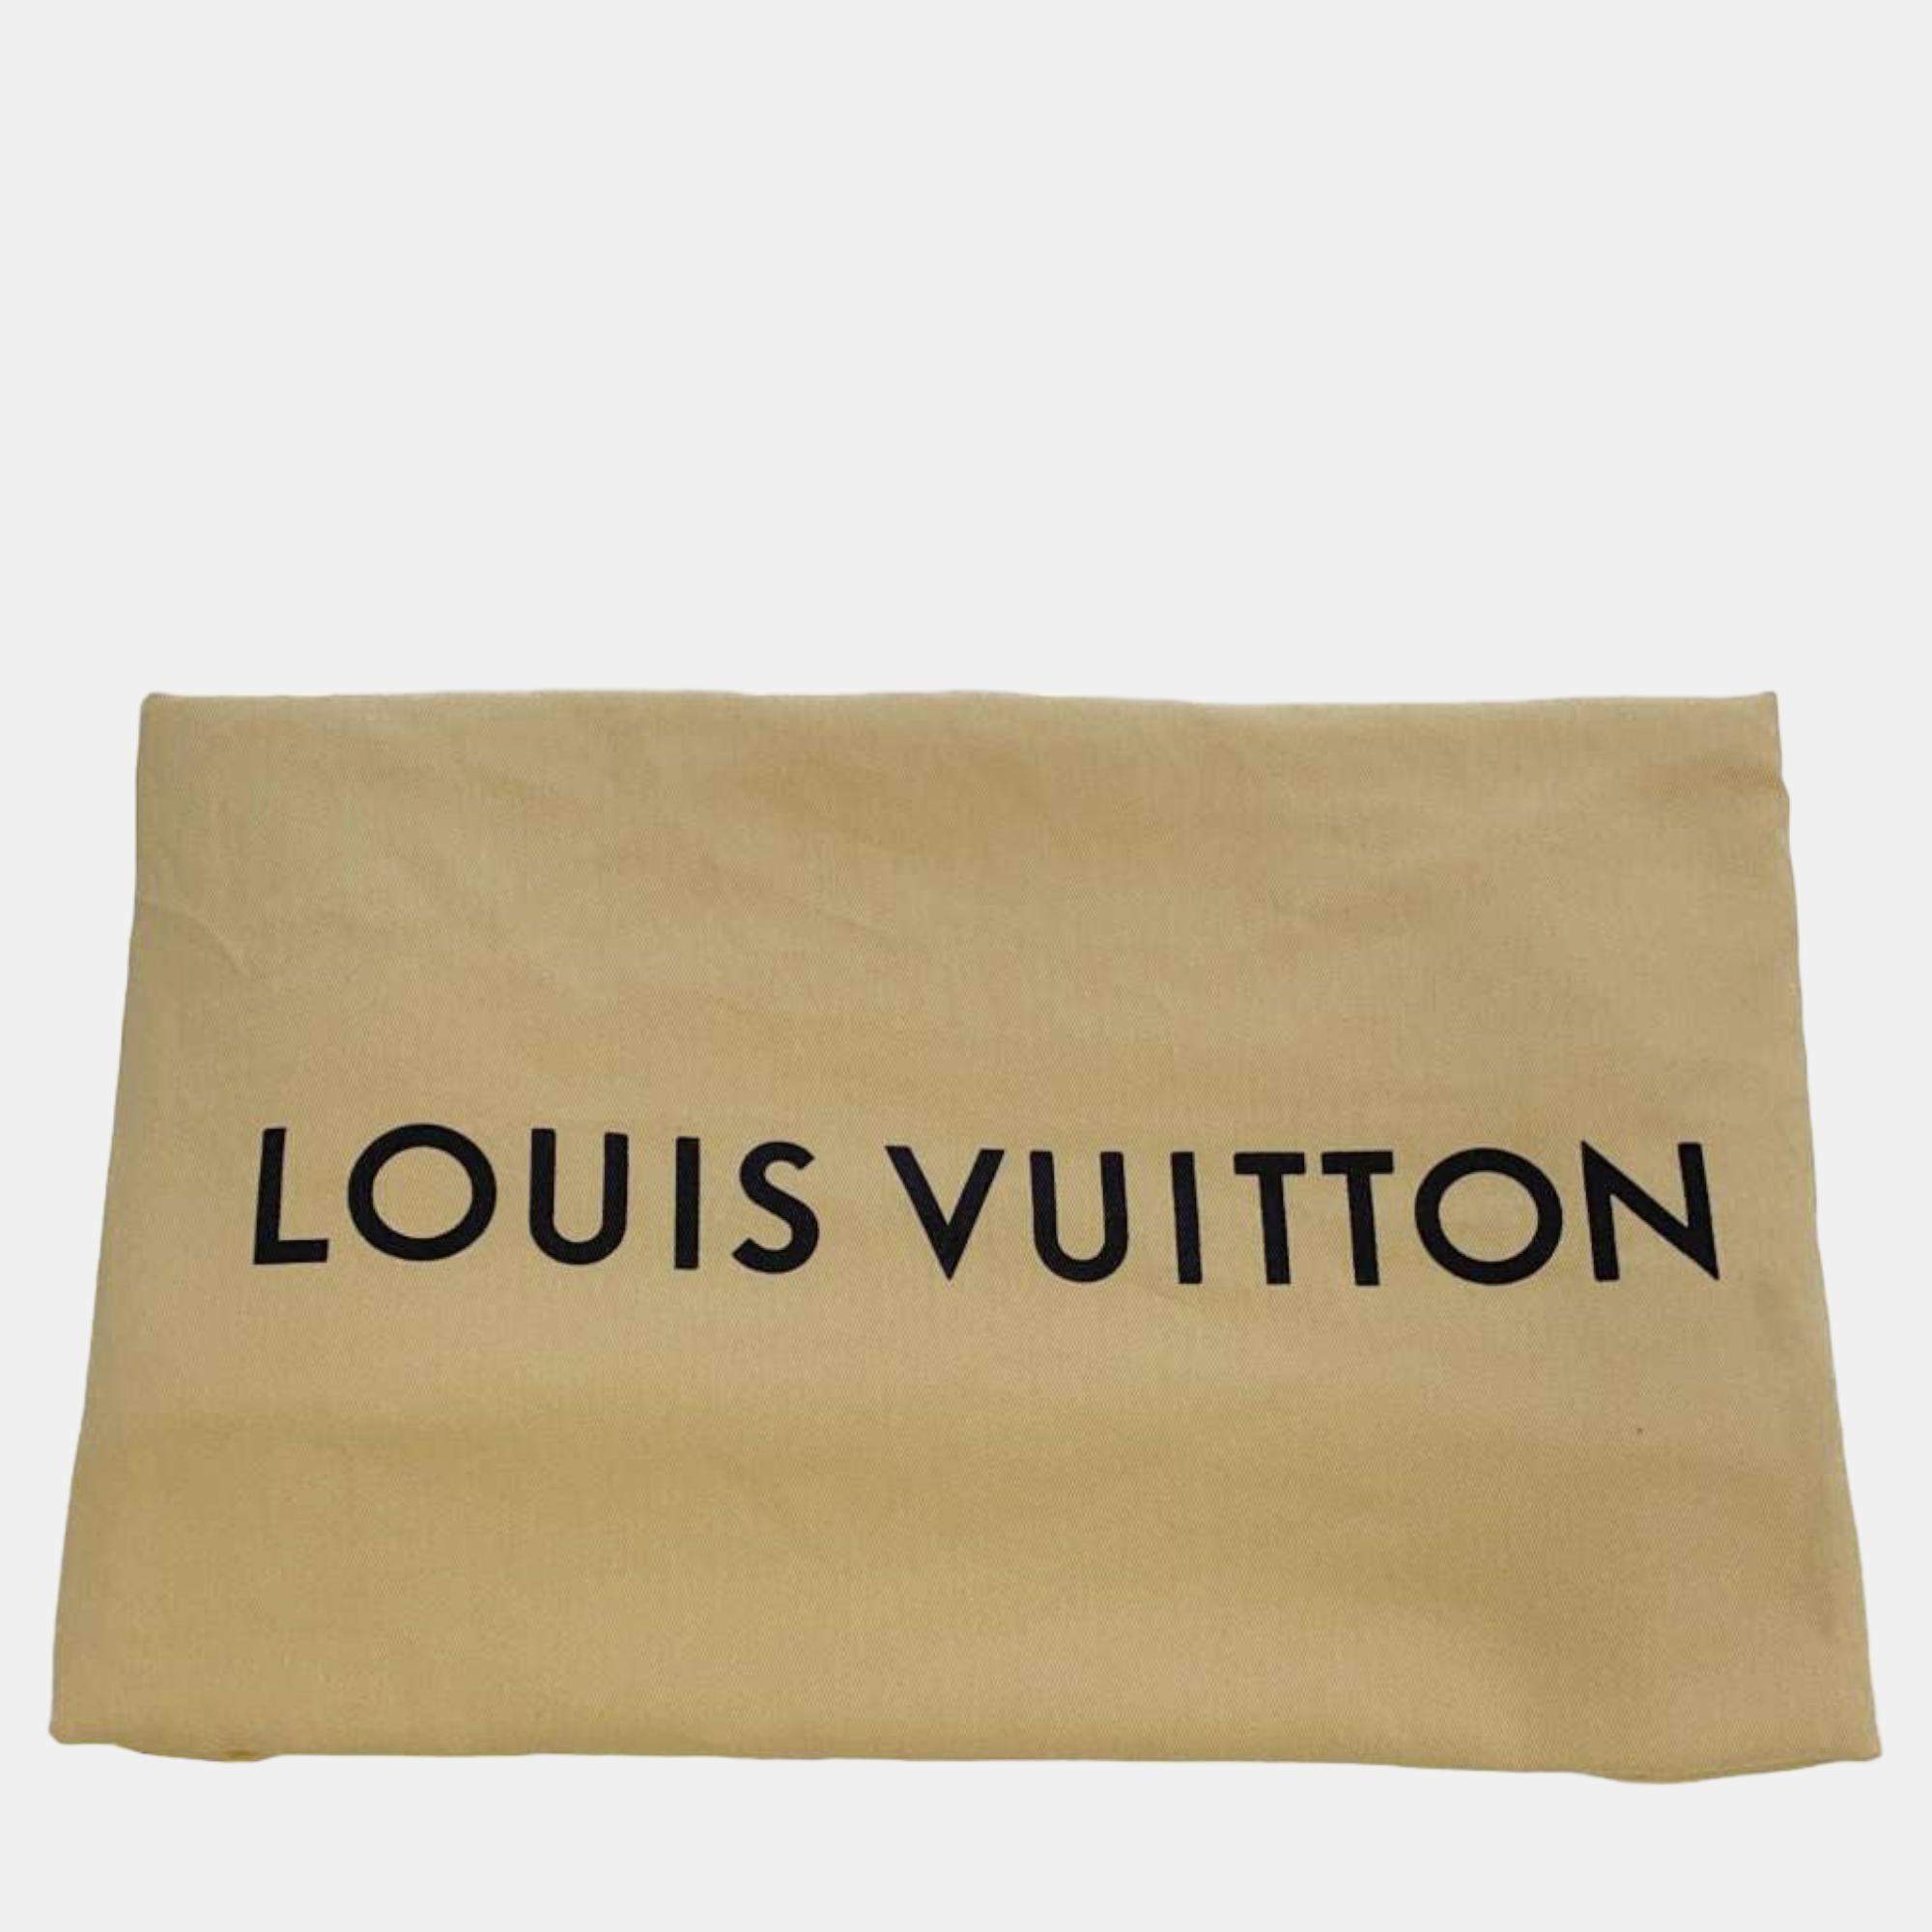 Mochila Christopher Gris - Louis Vuitton - Hopes Store